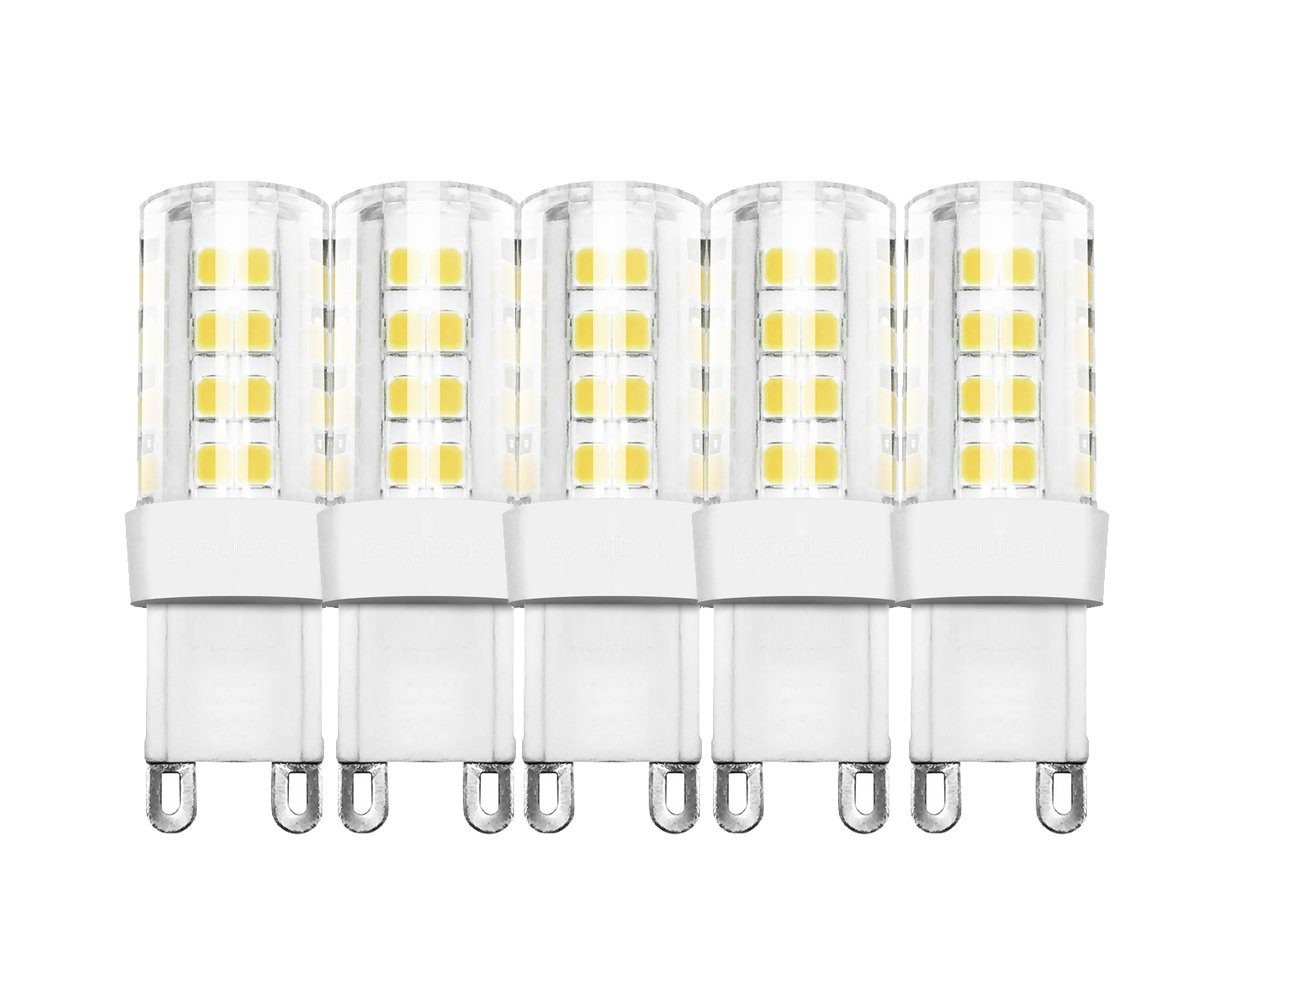 Braytron LED-Leuchtmittel 5 W G9 LED Leuchte Leuchtmittel Lampe 450 Lumen, Warmweiß 2700, 4,3 Watt, 450 Lumen, Warmweiß 2700K, G9, 5 Stück